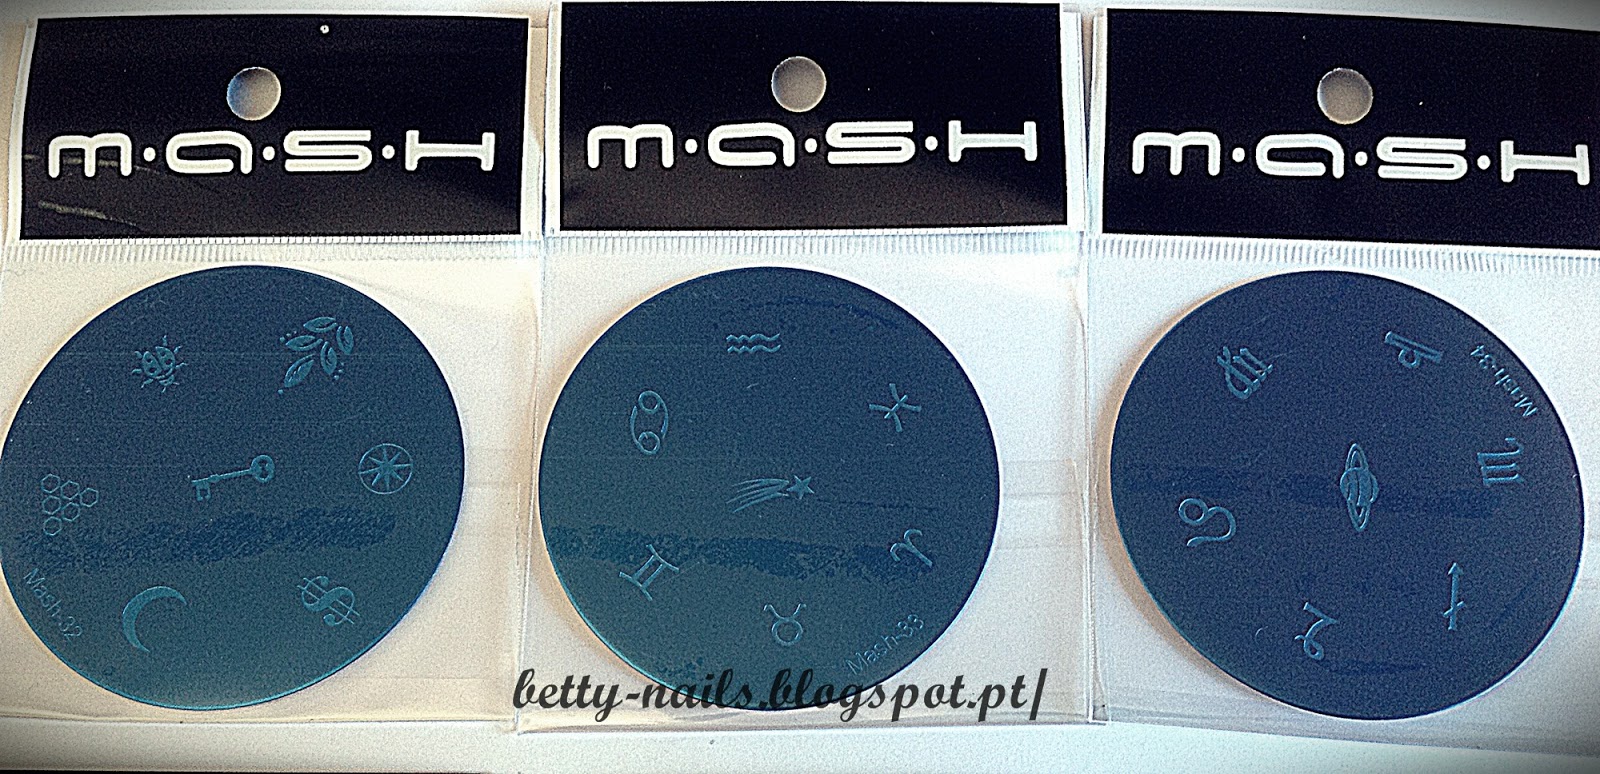 2. MASH Nail Art Stamping Plates Set - wide 3